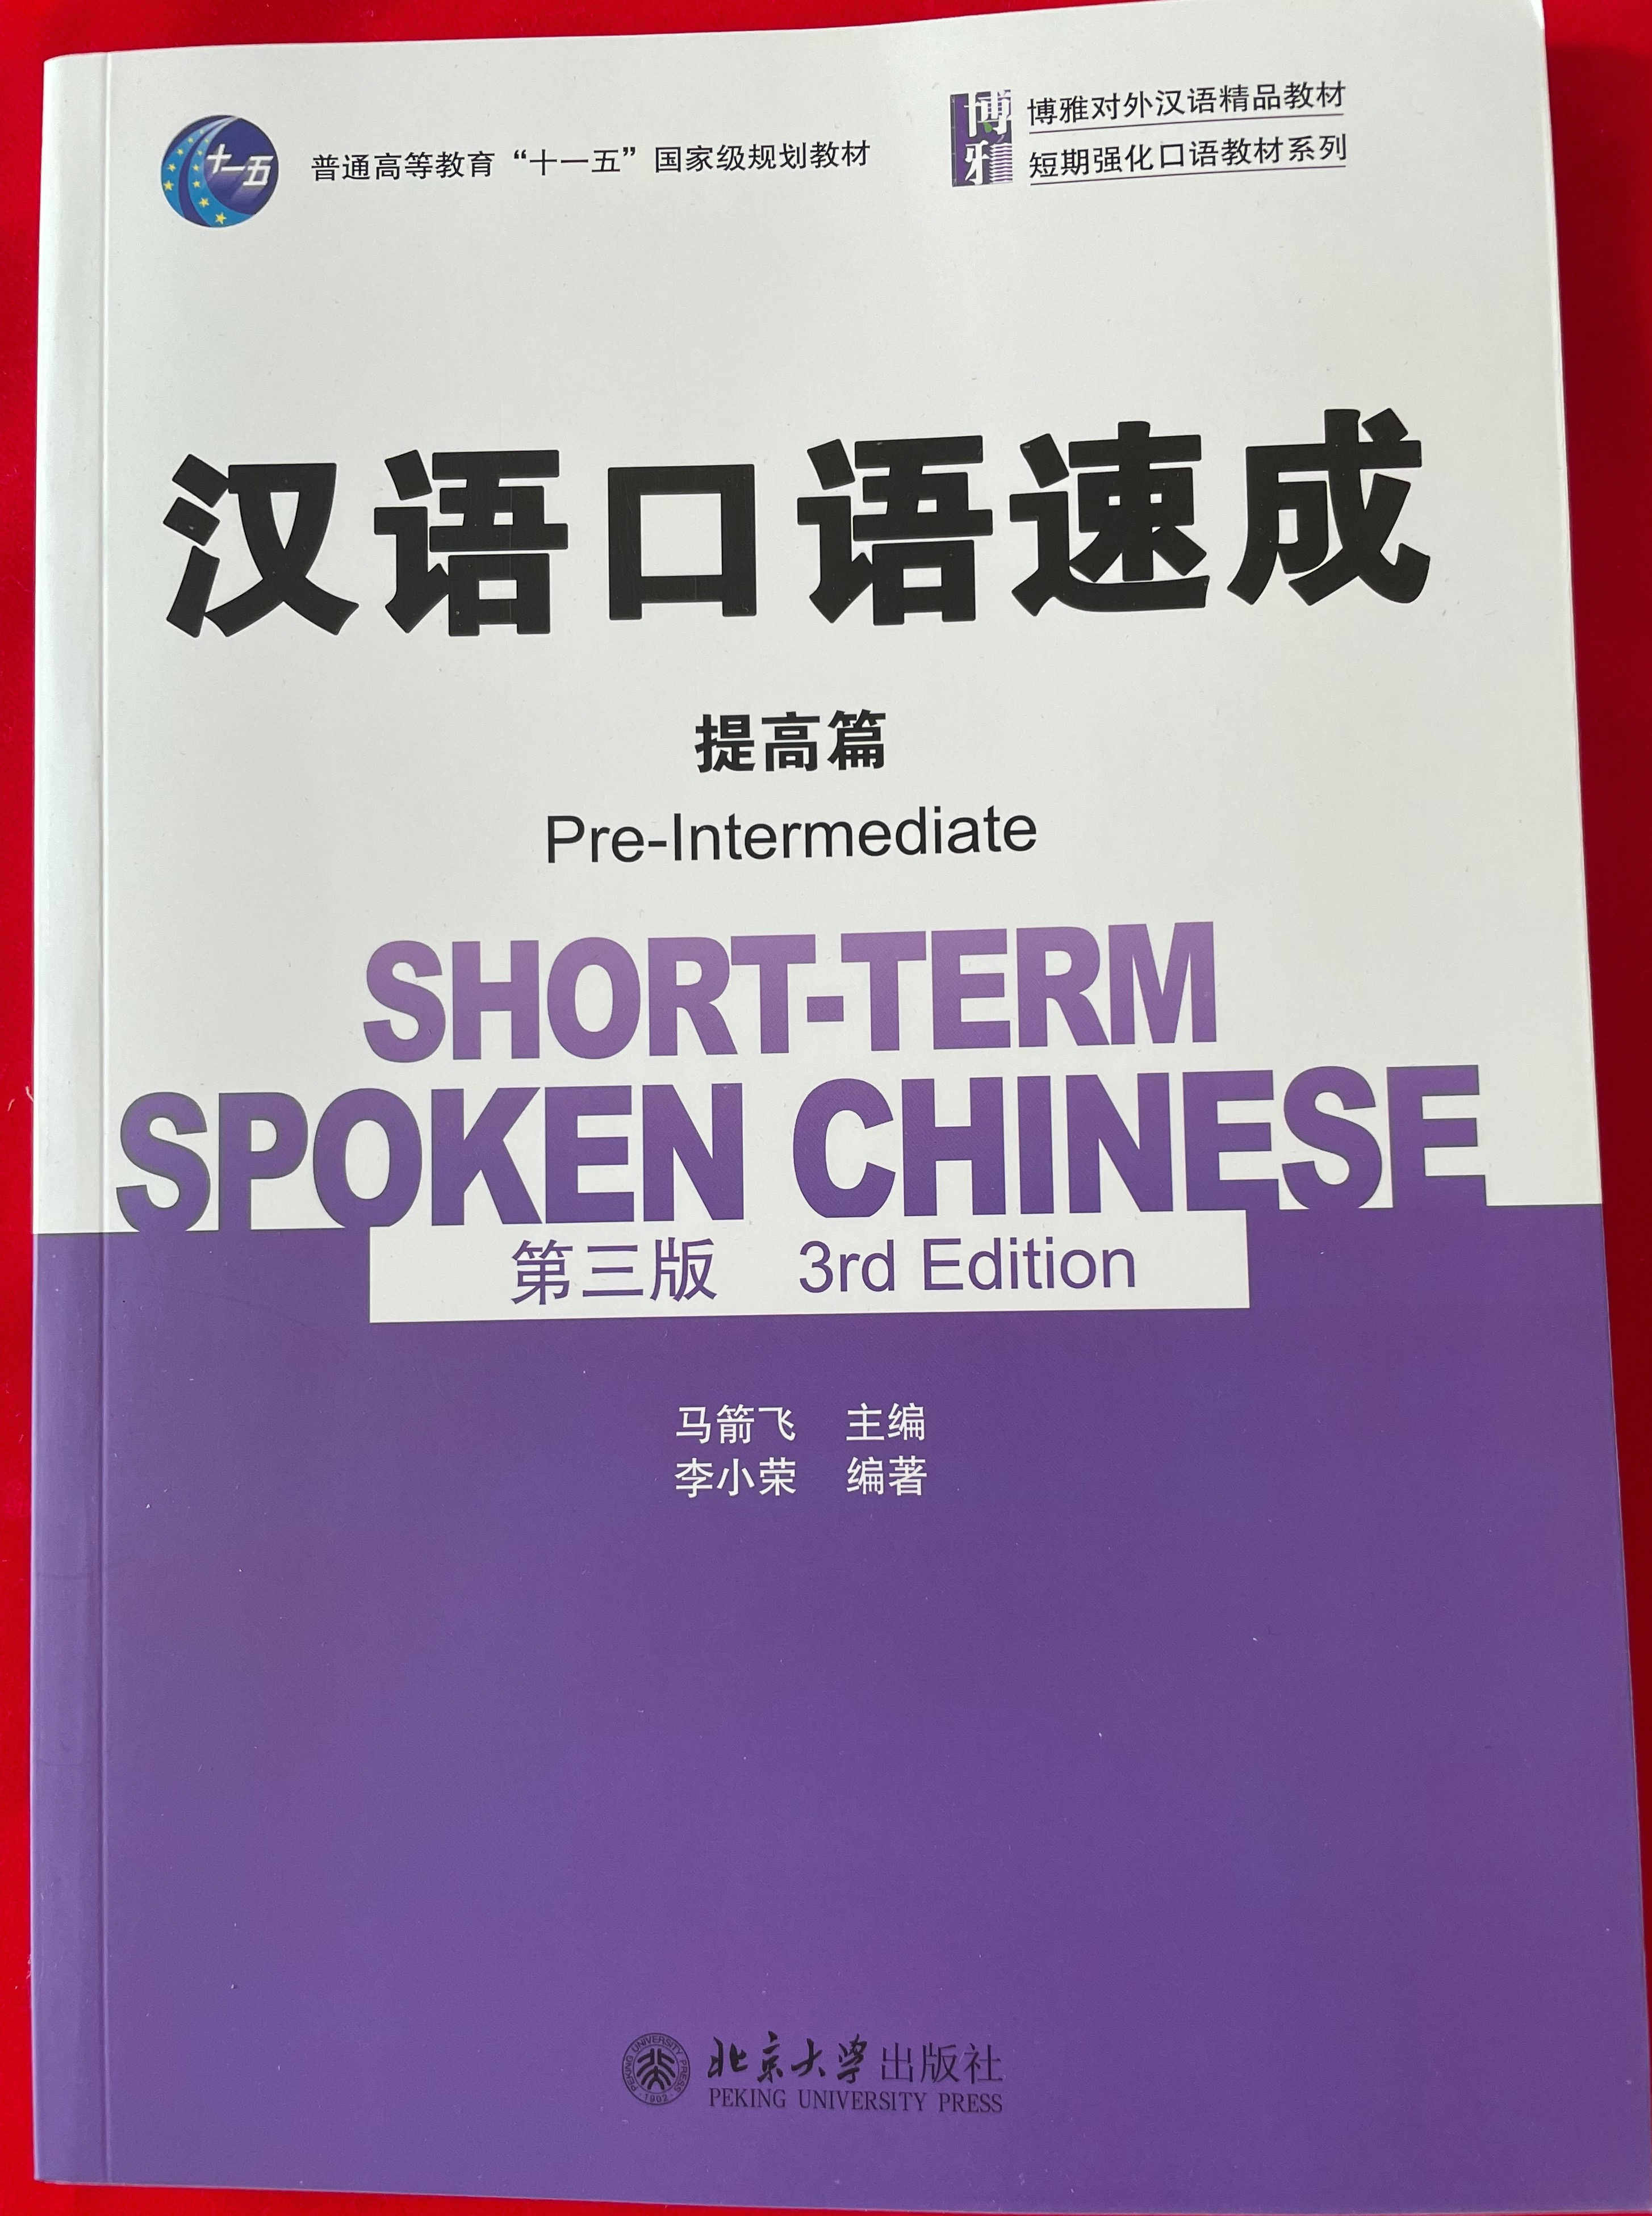 แบบเรียนจีน  汉语口语速成（第3版）提高篇 Short-term Spoken Chinese Pre-Intermediate (3nd Edition) - Textbook